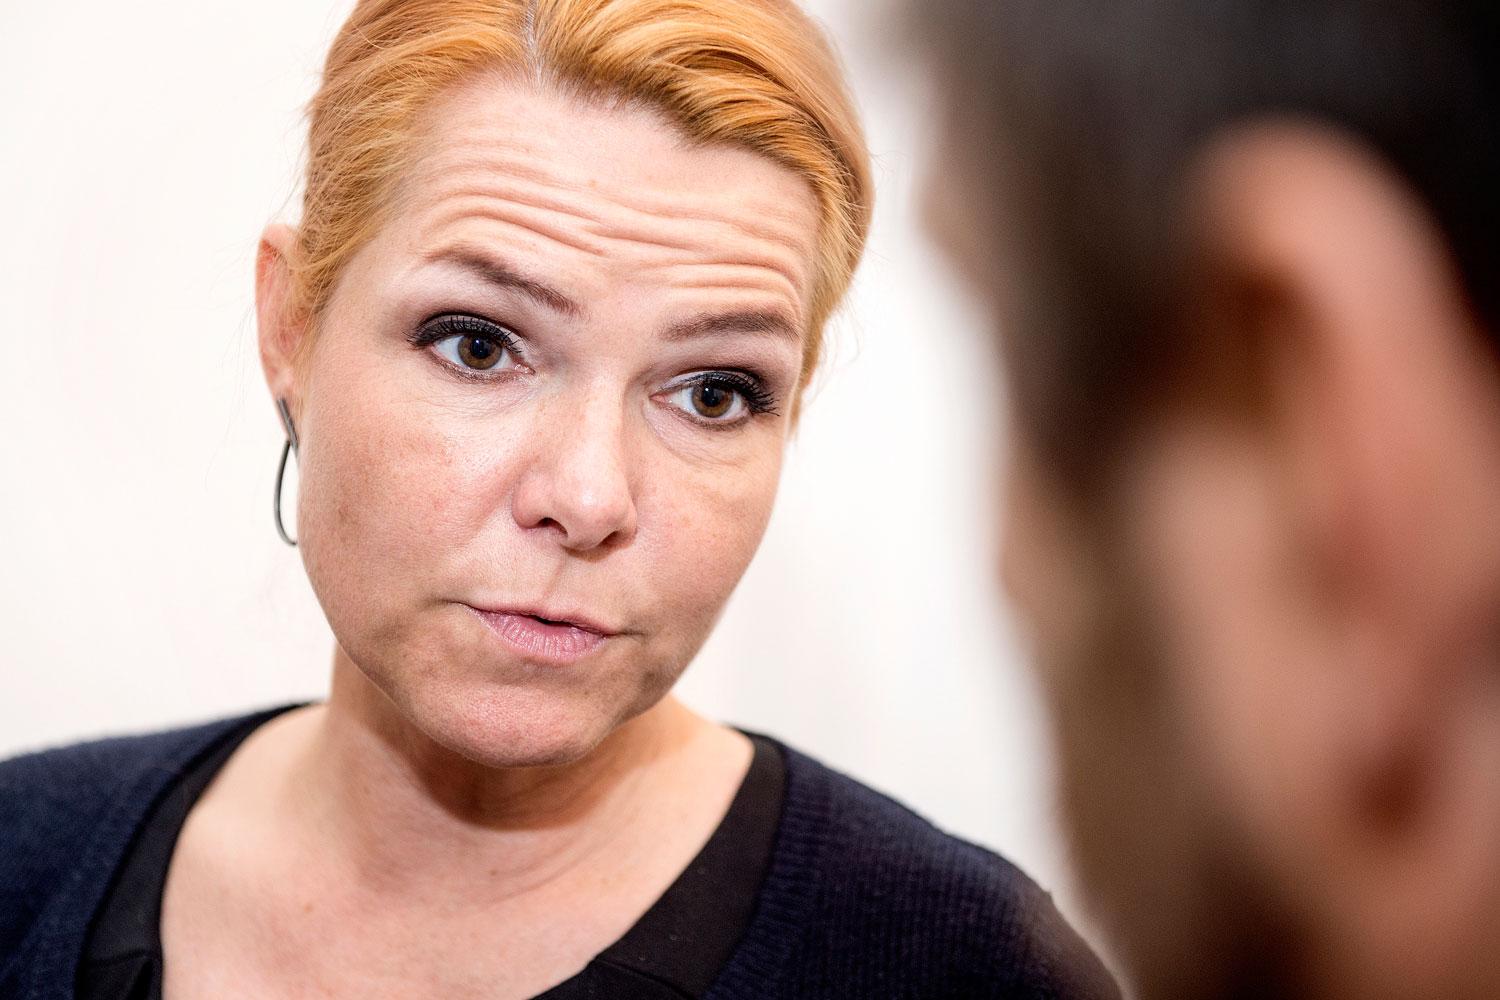 Danmarks migrationsminister Inger Støjberg